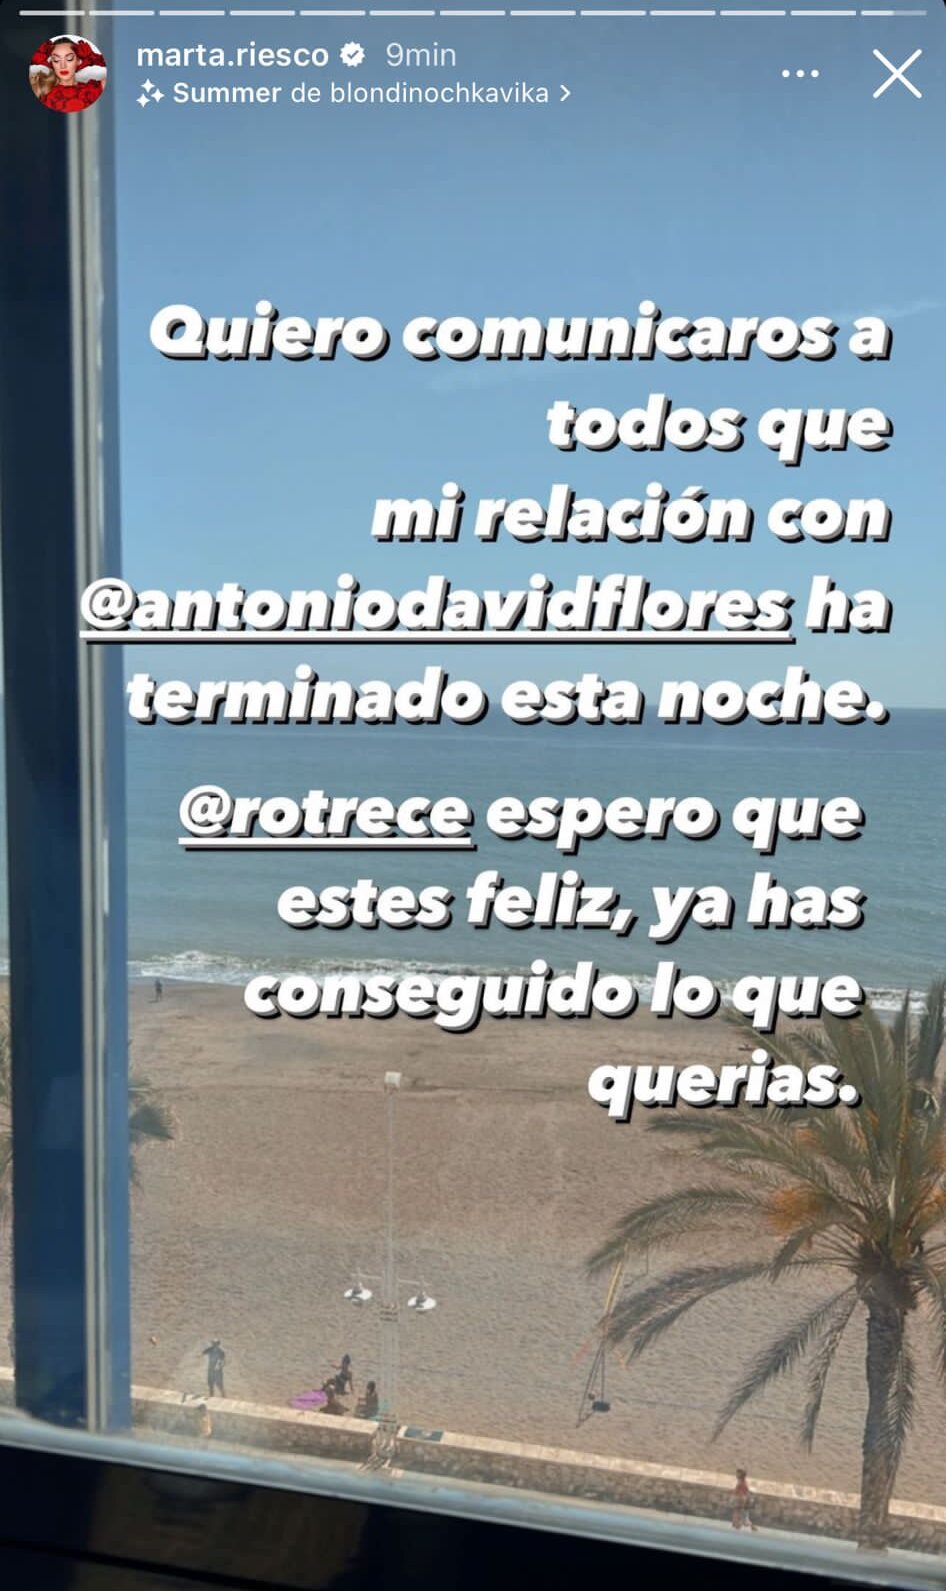 Marta Riesco ha confirmado la ruptura con Antonio David Flores en Instagram